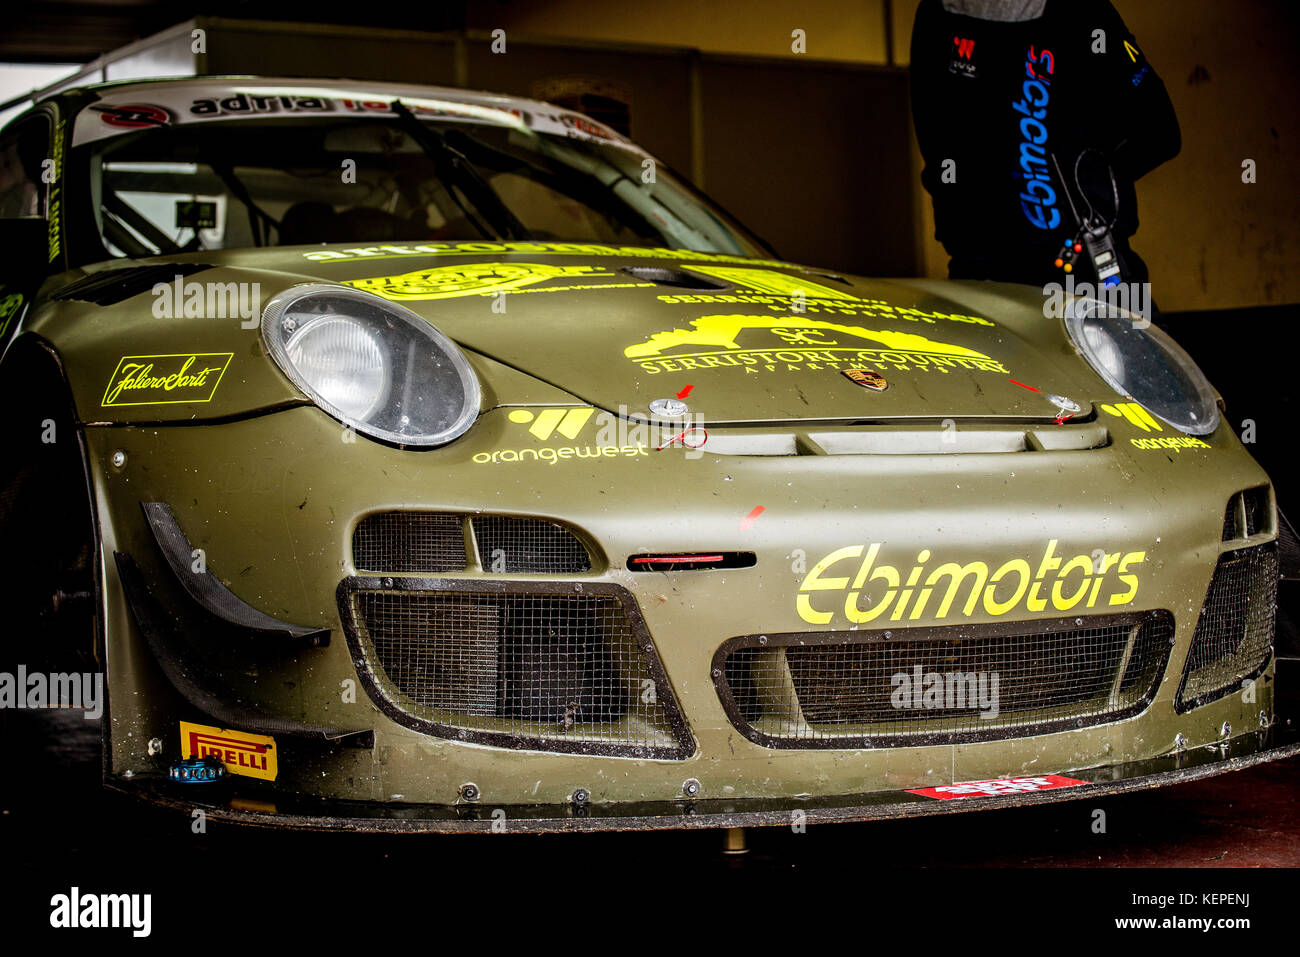 Porsche Racing voiture dans le paddock, nez sale détail Banque D'Images